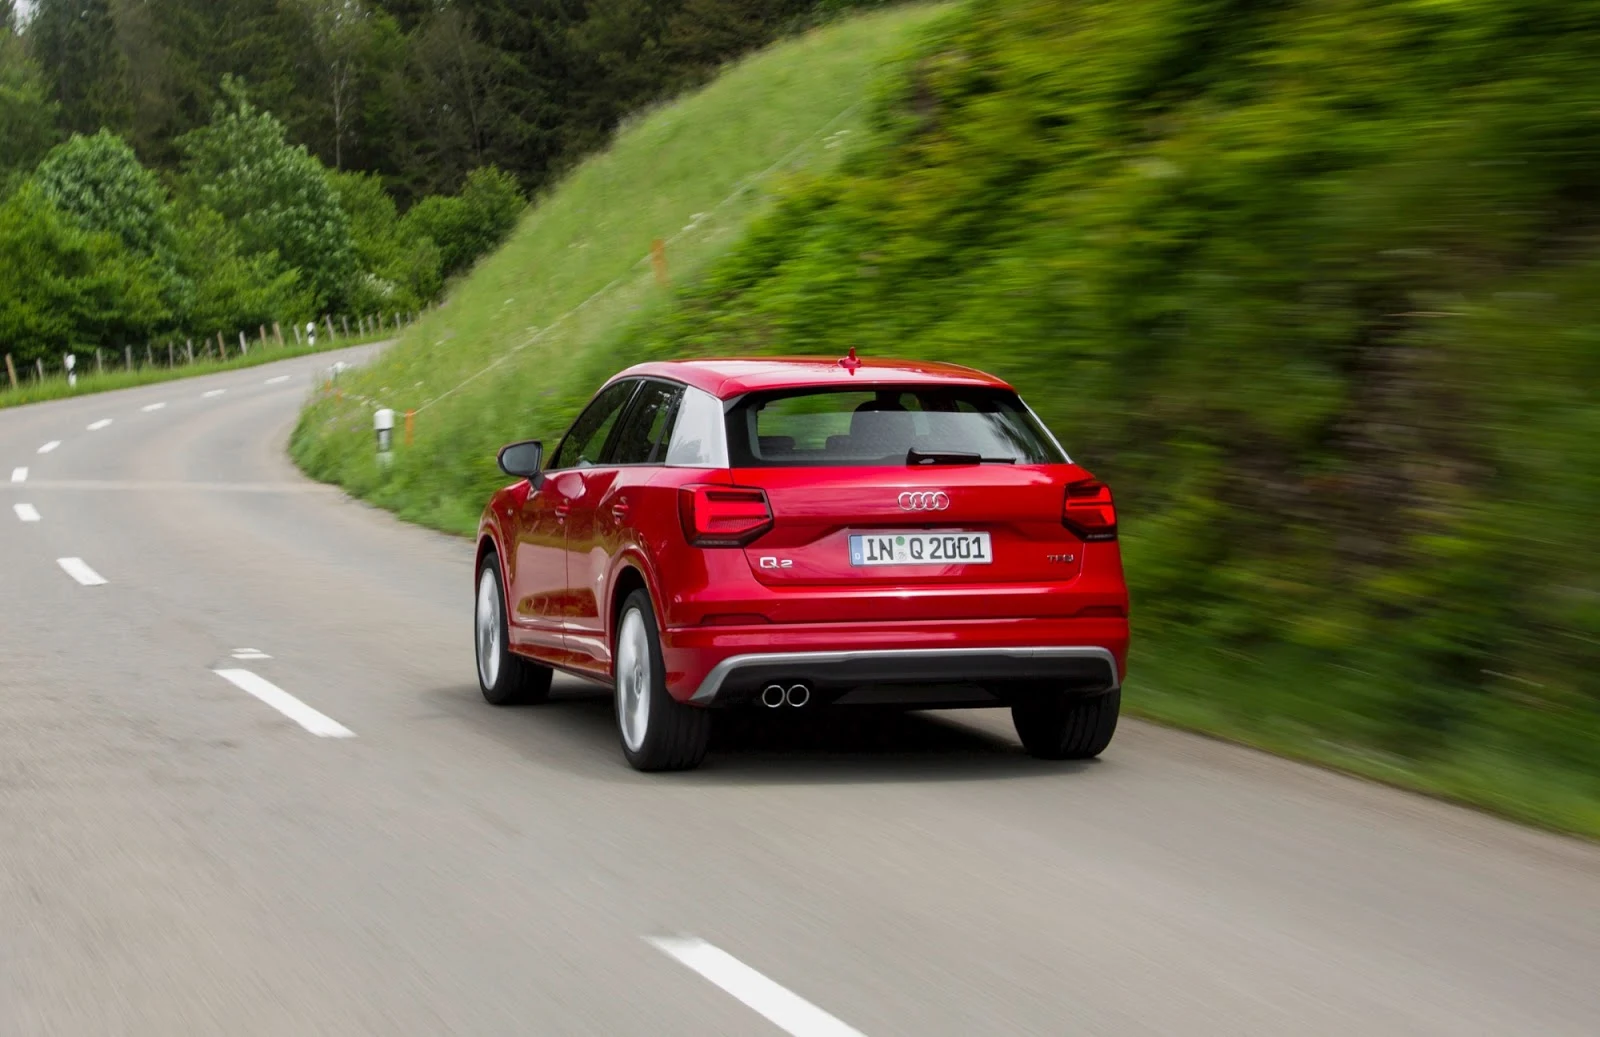 Khả năng vận hành của Audi Q2 2017 rất đa nhiệm